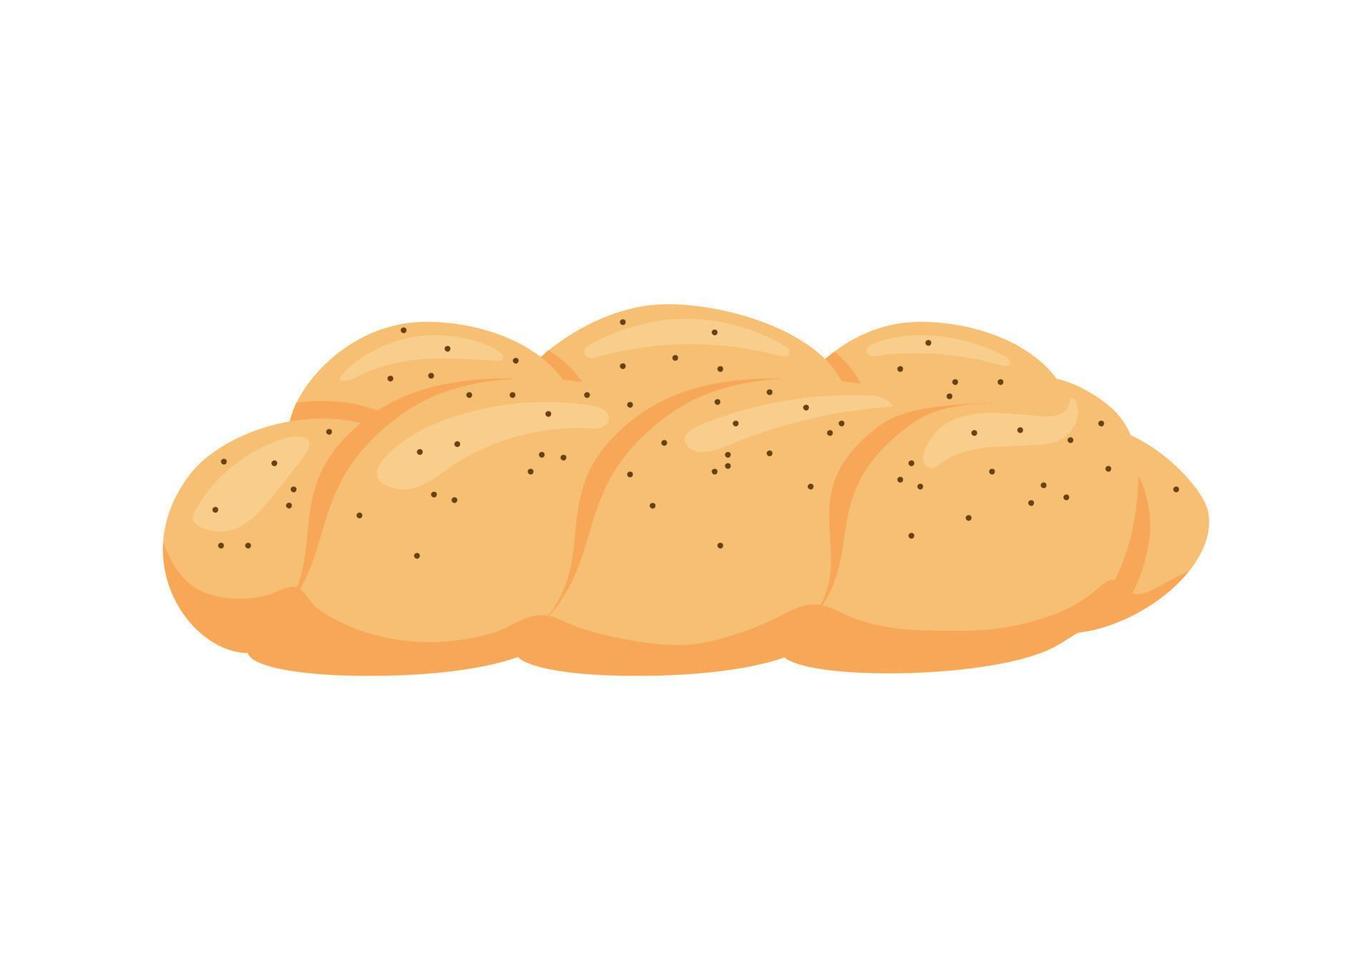 jalá, pan de pastelería trenzado de trigo, comida de panadería. pan con amapola. ilustración vectorial vector